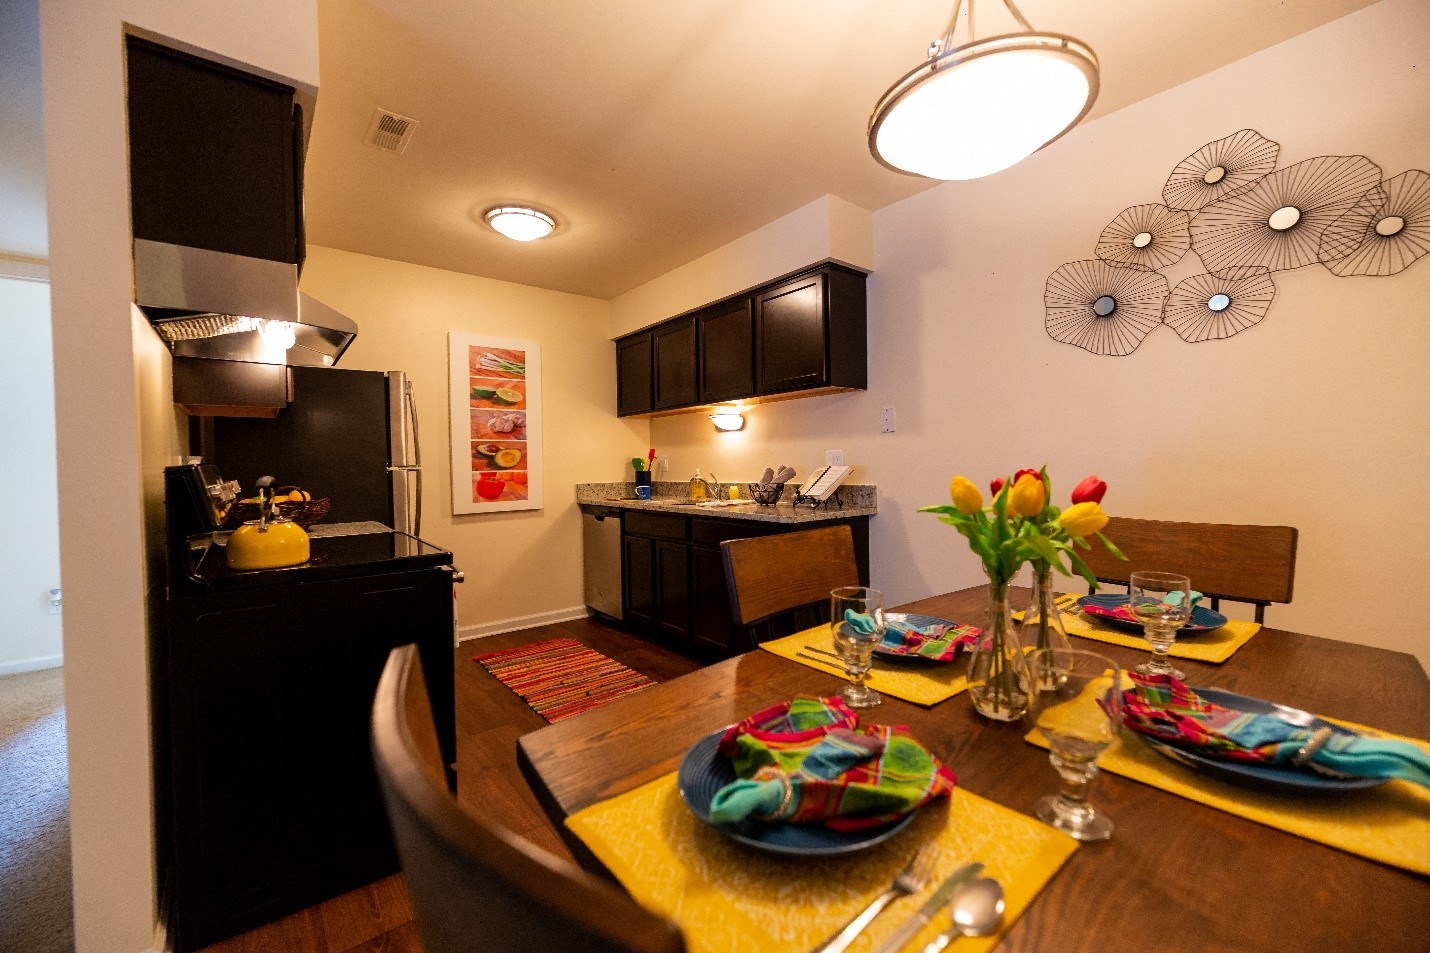 Twilight Kitchen Upgrade at Westwood Village Apartments in Westland Michigan